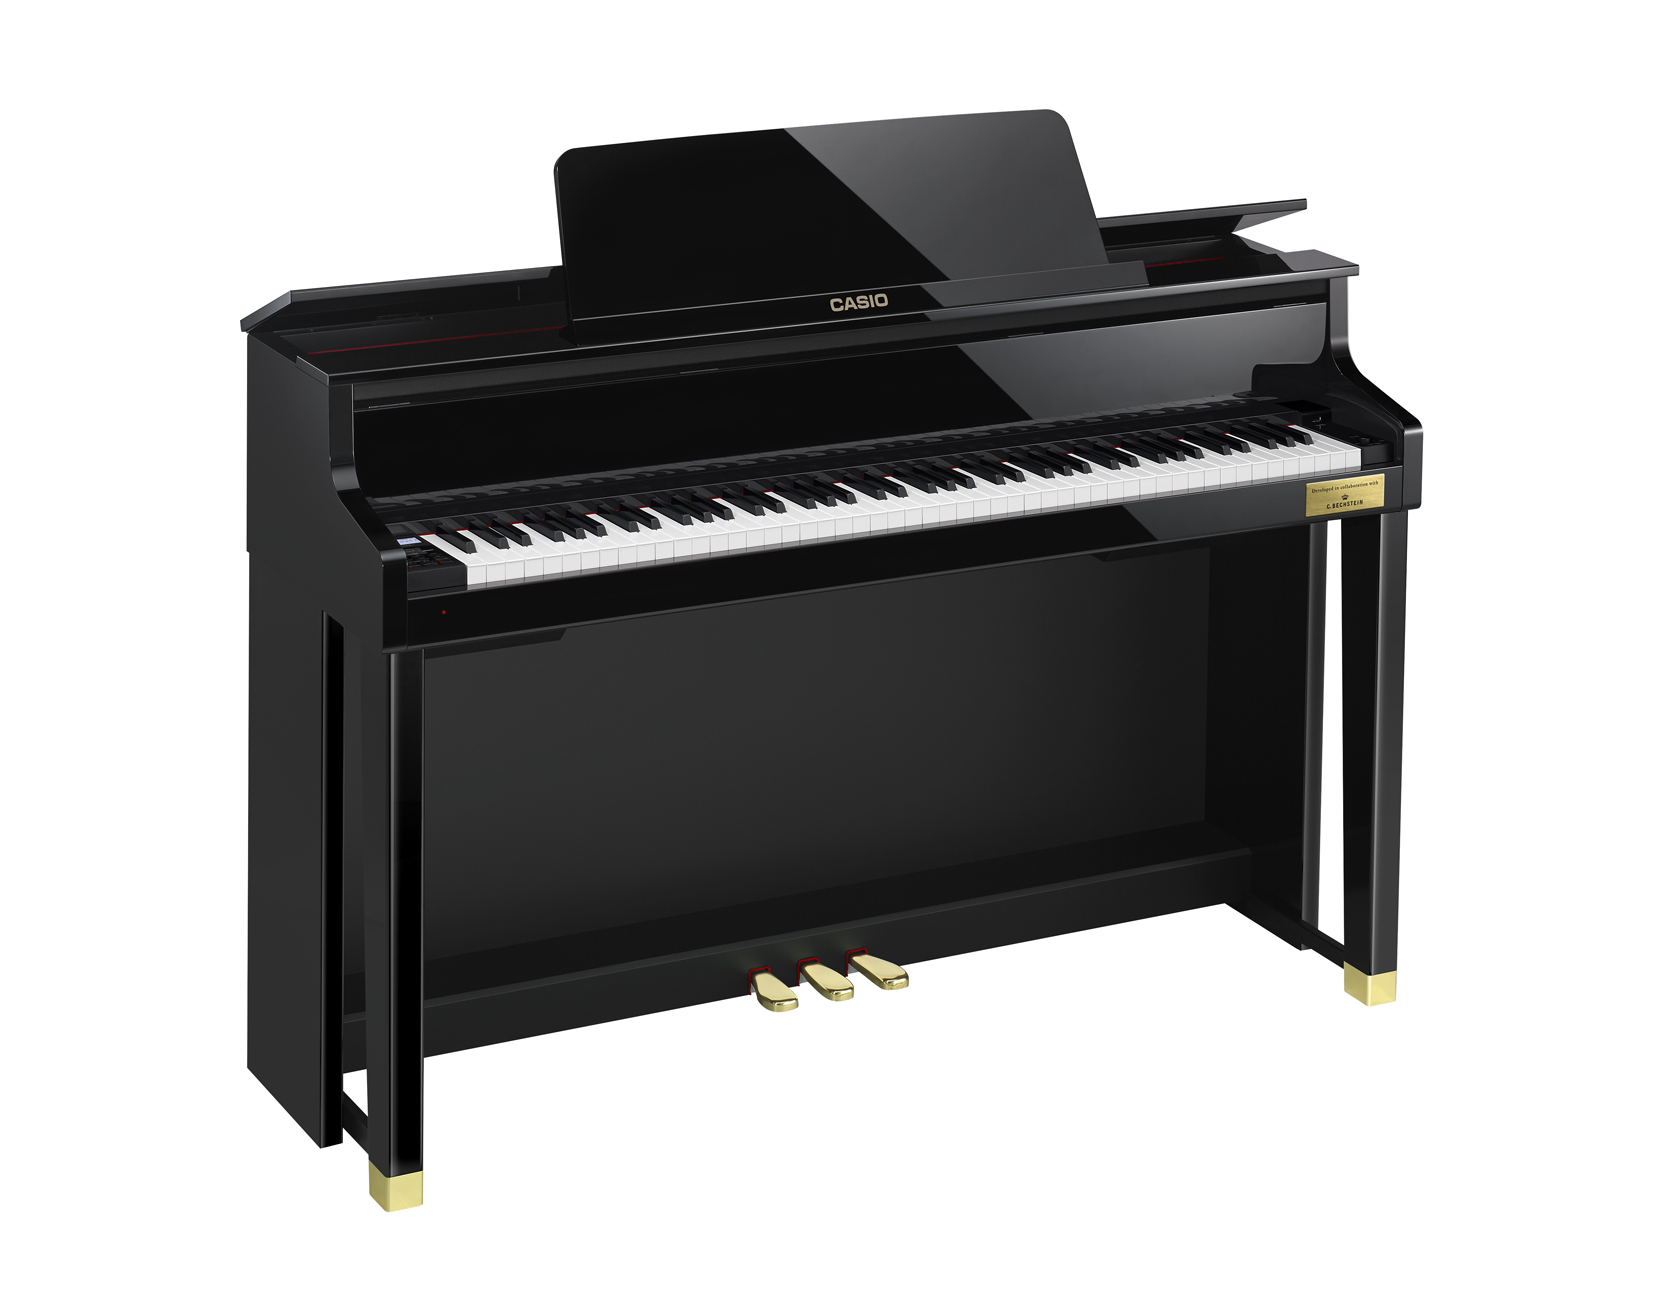 Casio GP-500 Grand Hybrid Piano left